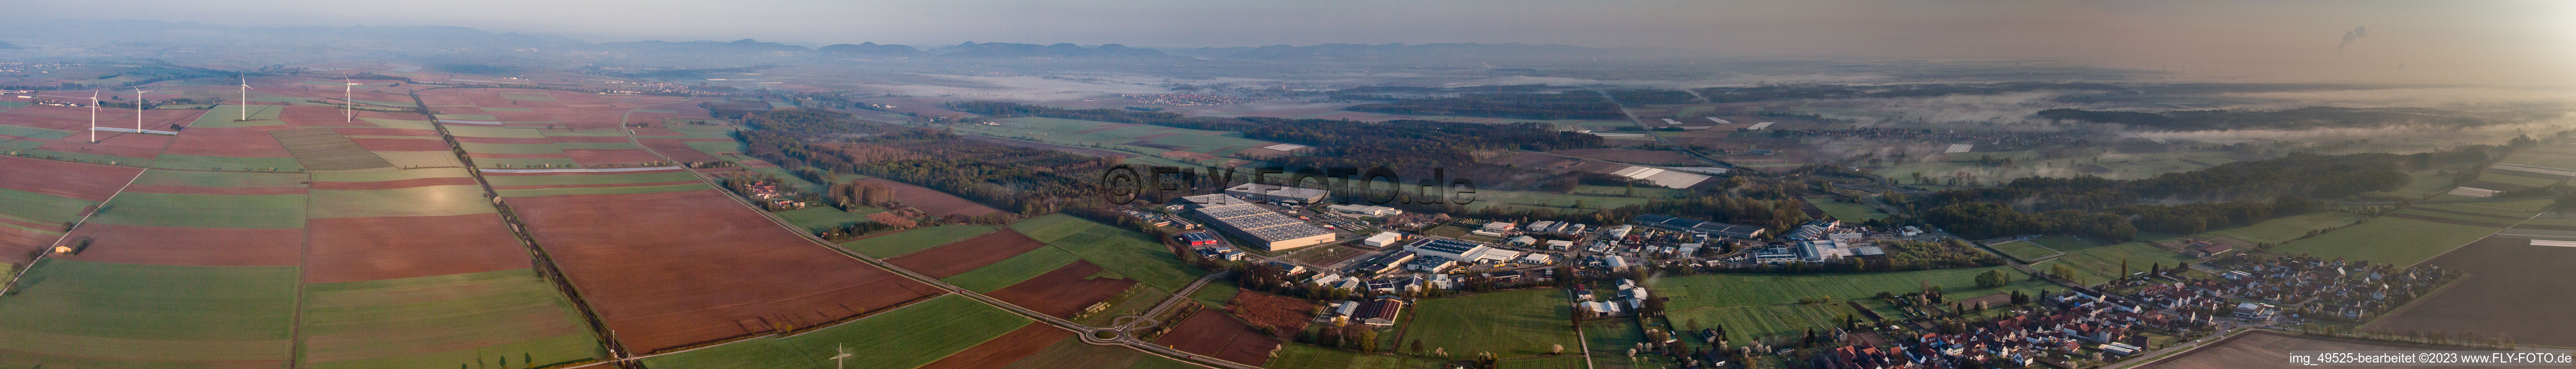 Vue aérienne de Panorama de la zone industrielle de Horst à le quartier Minderslachen in Kandel dans le département Rhénanie-Palatinat, Allemagne